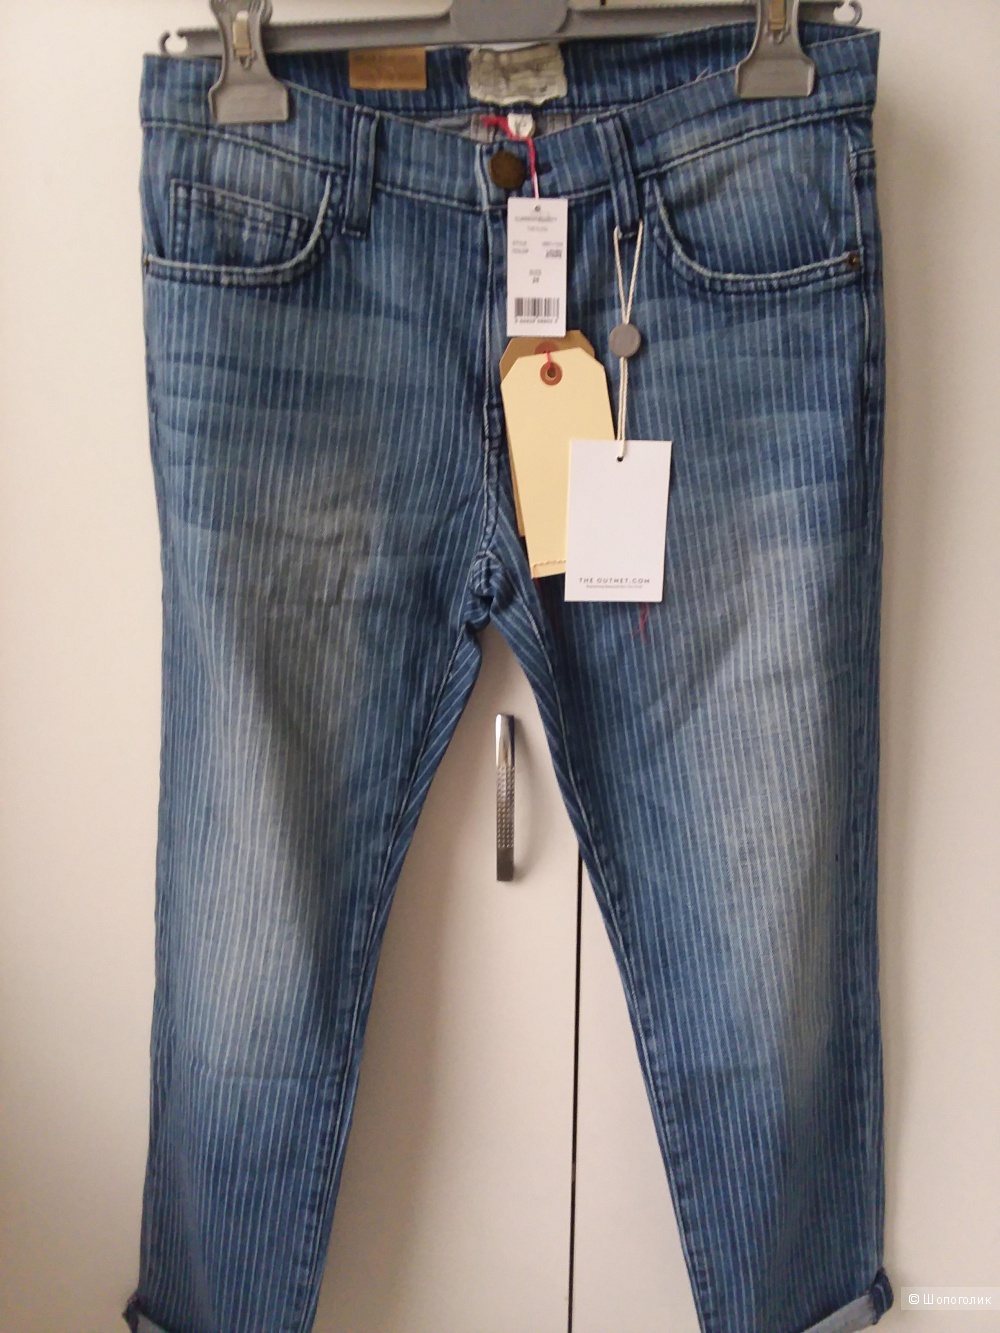 Женские джинсы CURRENT/ELLIOTT  25 размер